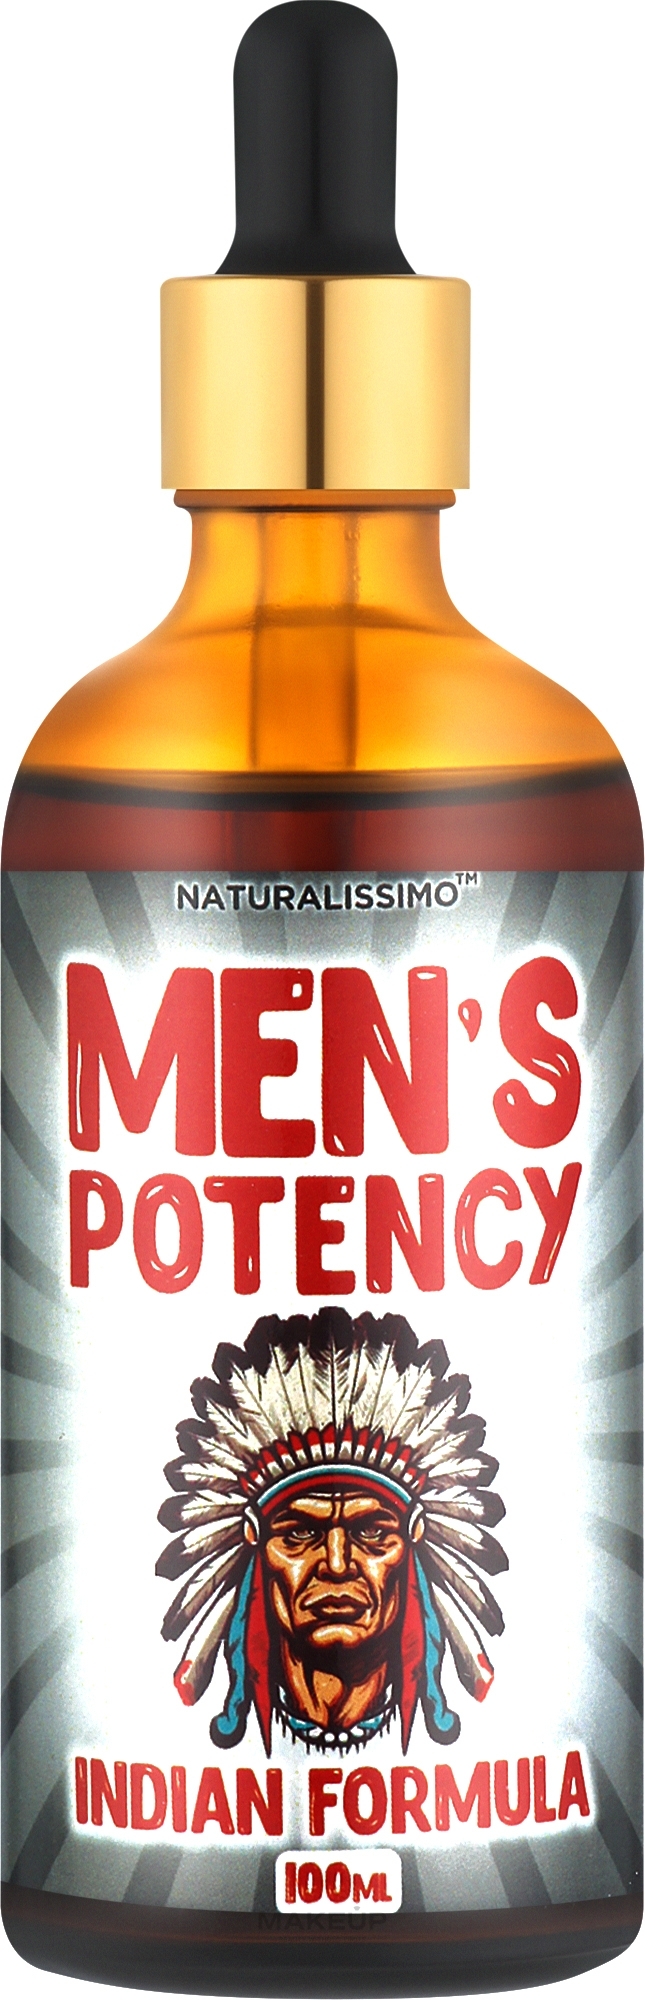 Засіб для потенції з перцем чилі - Naturalissimo Men's Potency Indian Formula — фото 100ml